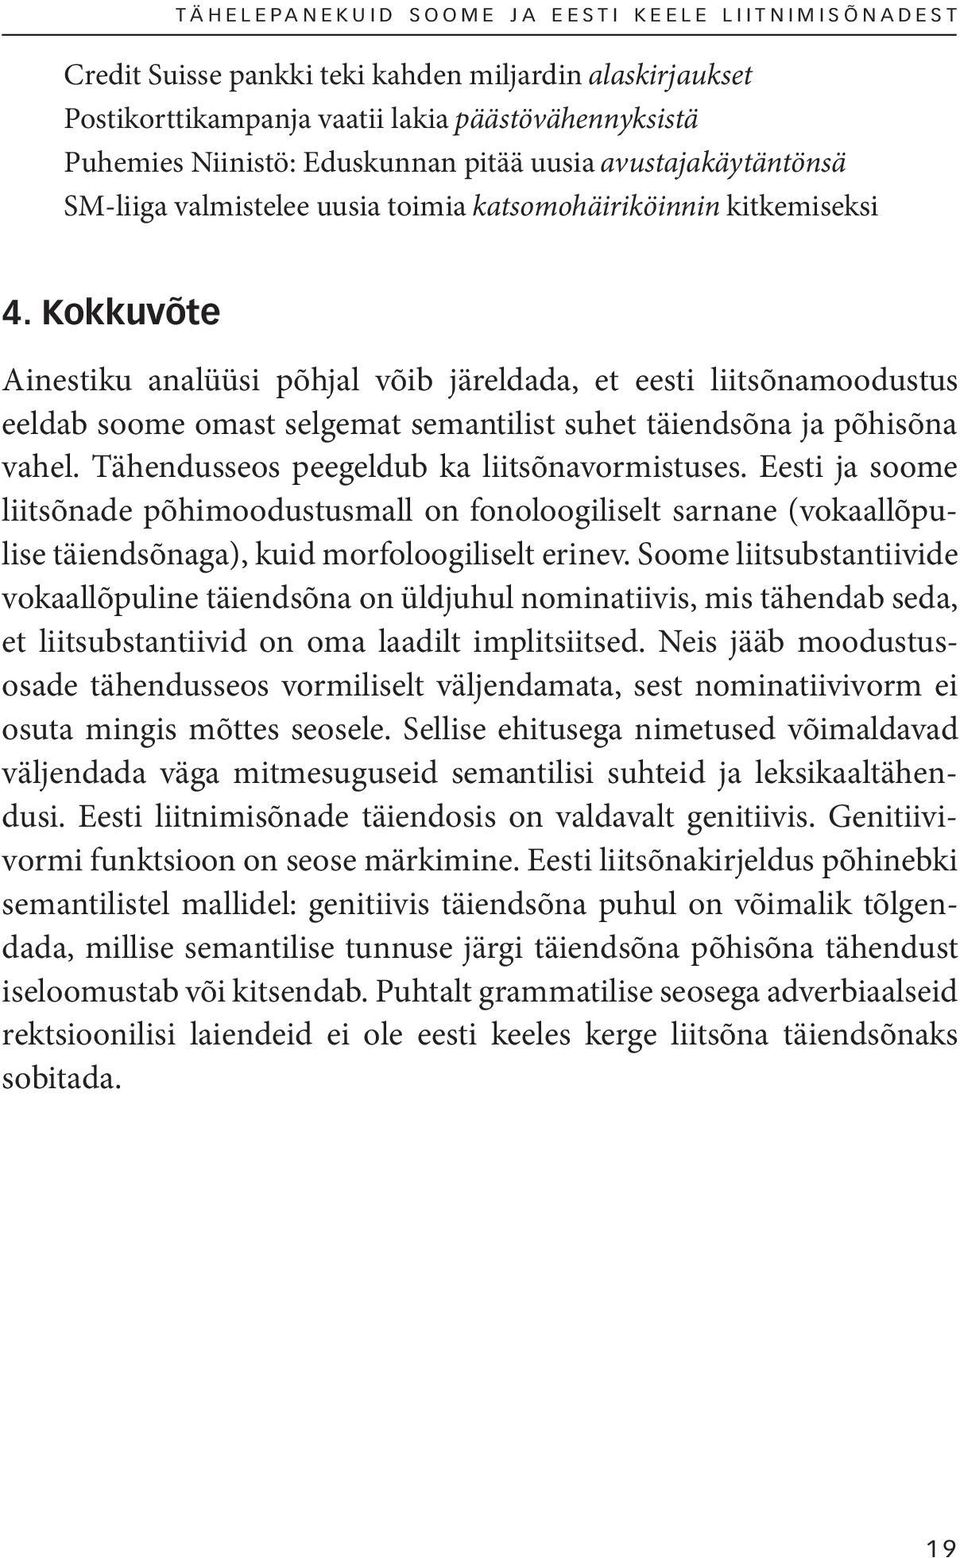 Kokkuvõte Ainestiku analüüsi põhjal võib järeldada, et eesti liitsõnamoodustus eeldab soome omast selgemat semantilist suhet täiendsõna ja põhisõna vahel.